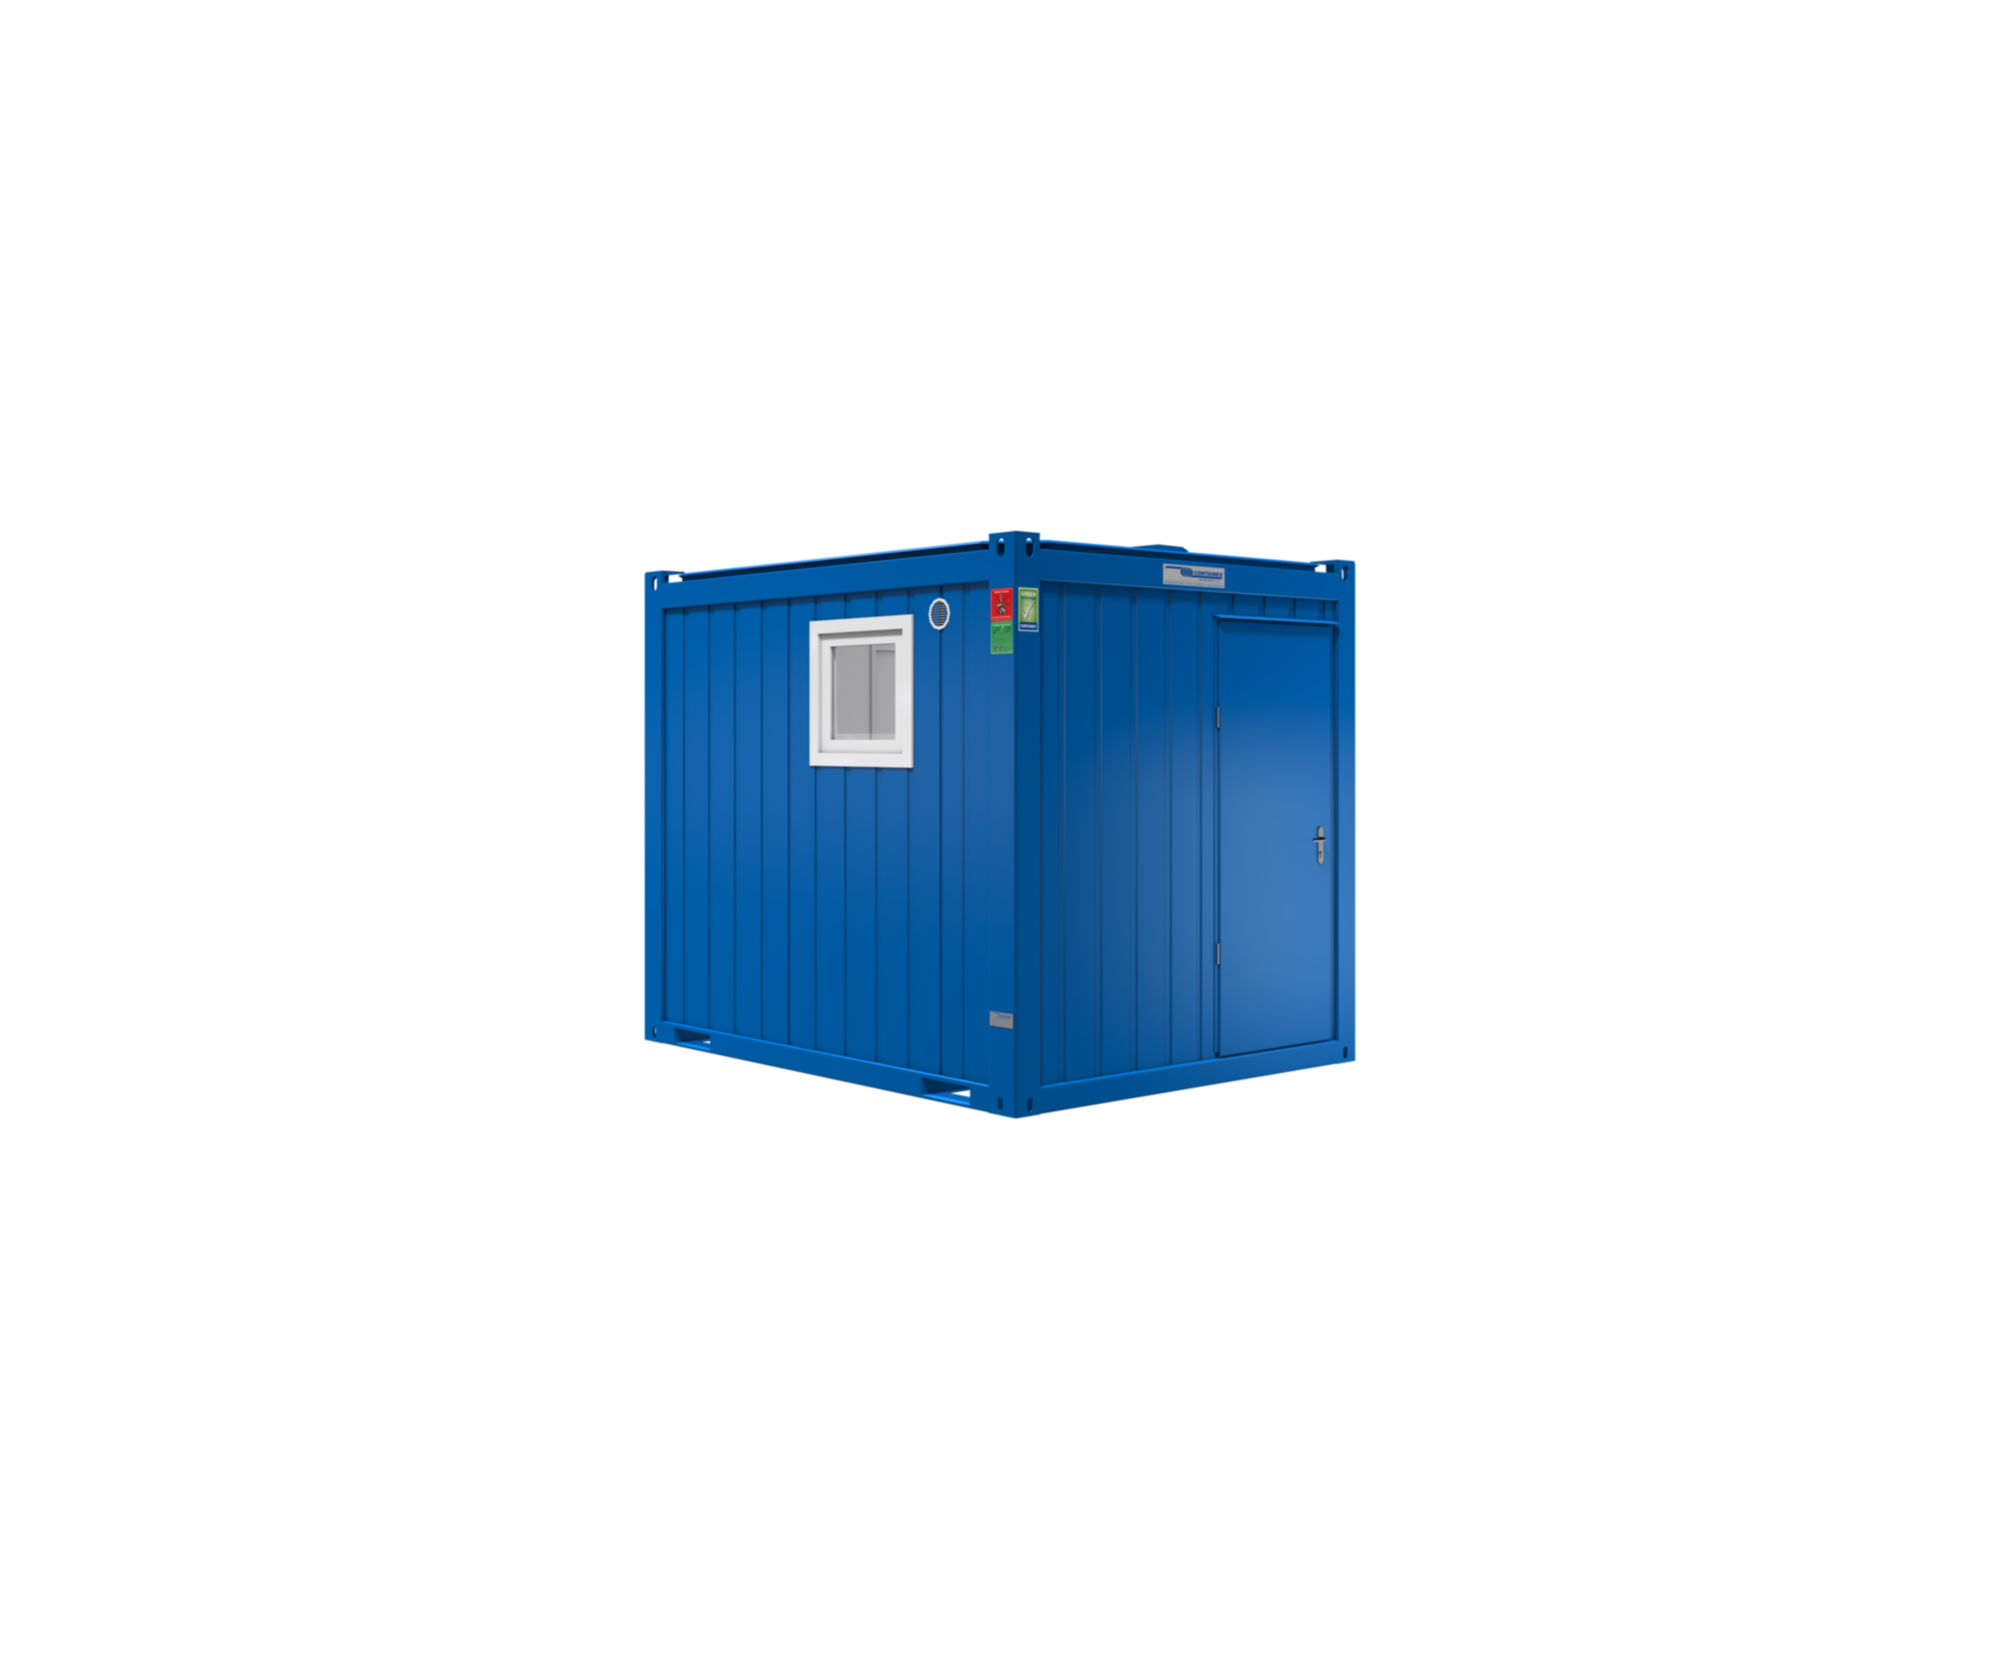 10' Prefabbricato modulare ad uso WC e sanitarioCONTAINEX CLASSIC Line